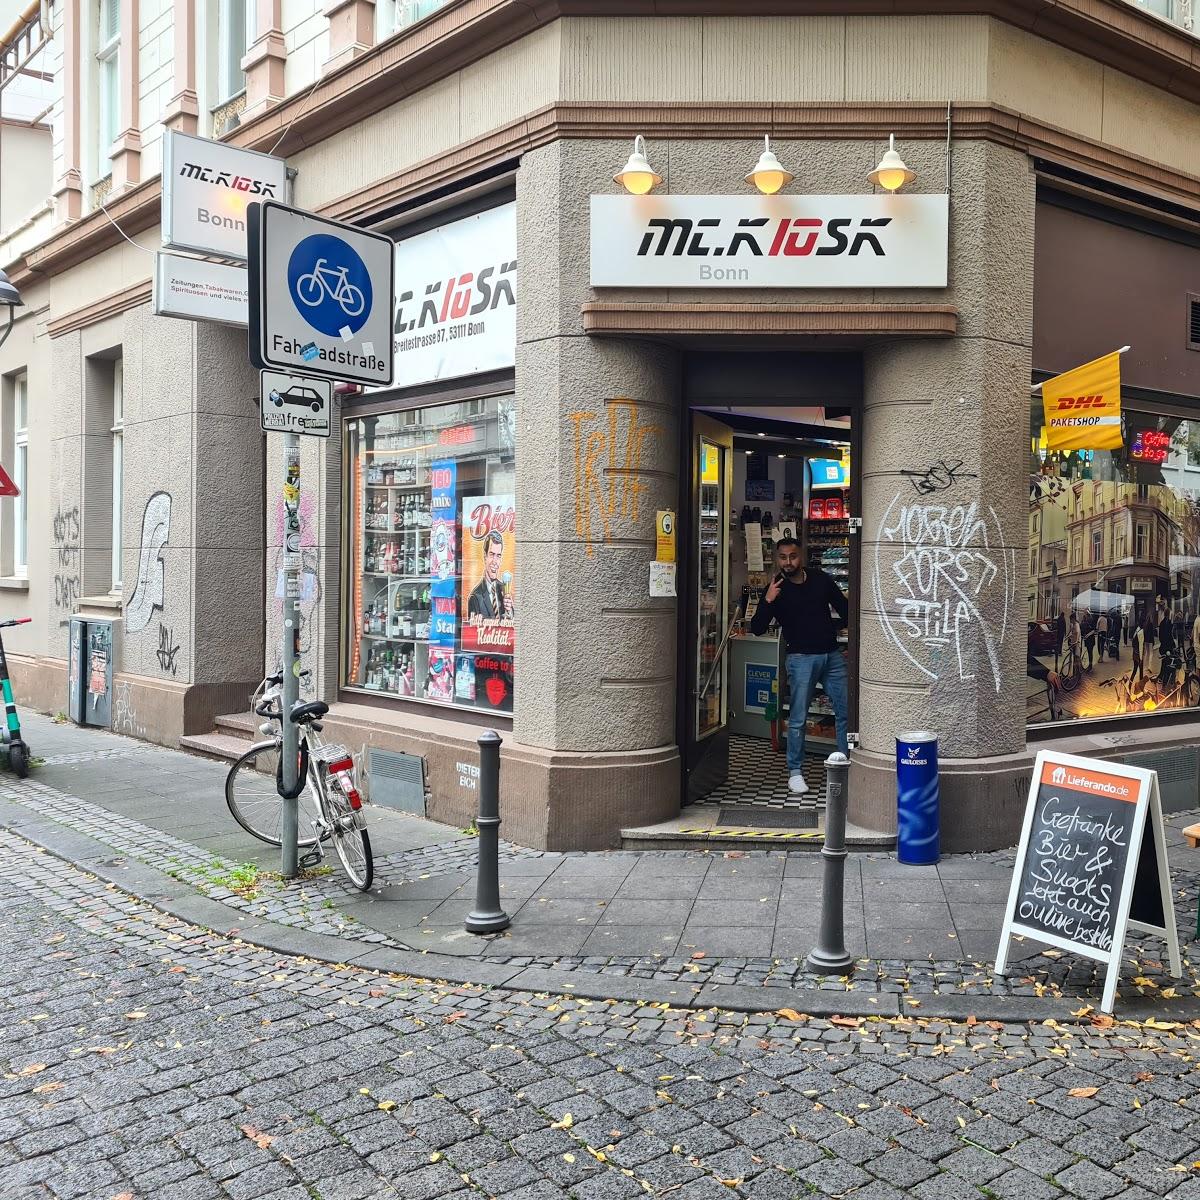 Restaurant "Mc.Kiosk" in Bonn